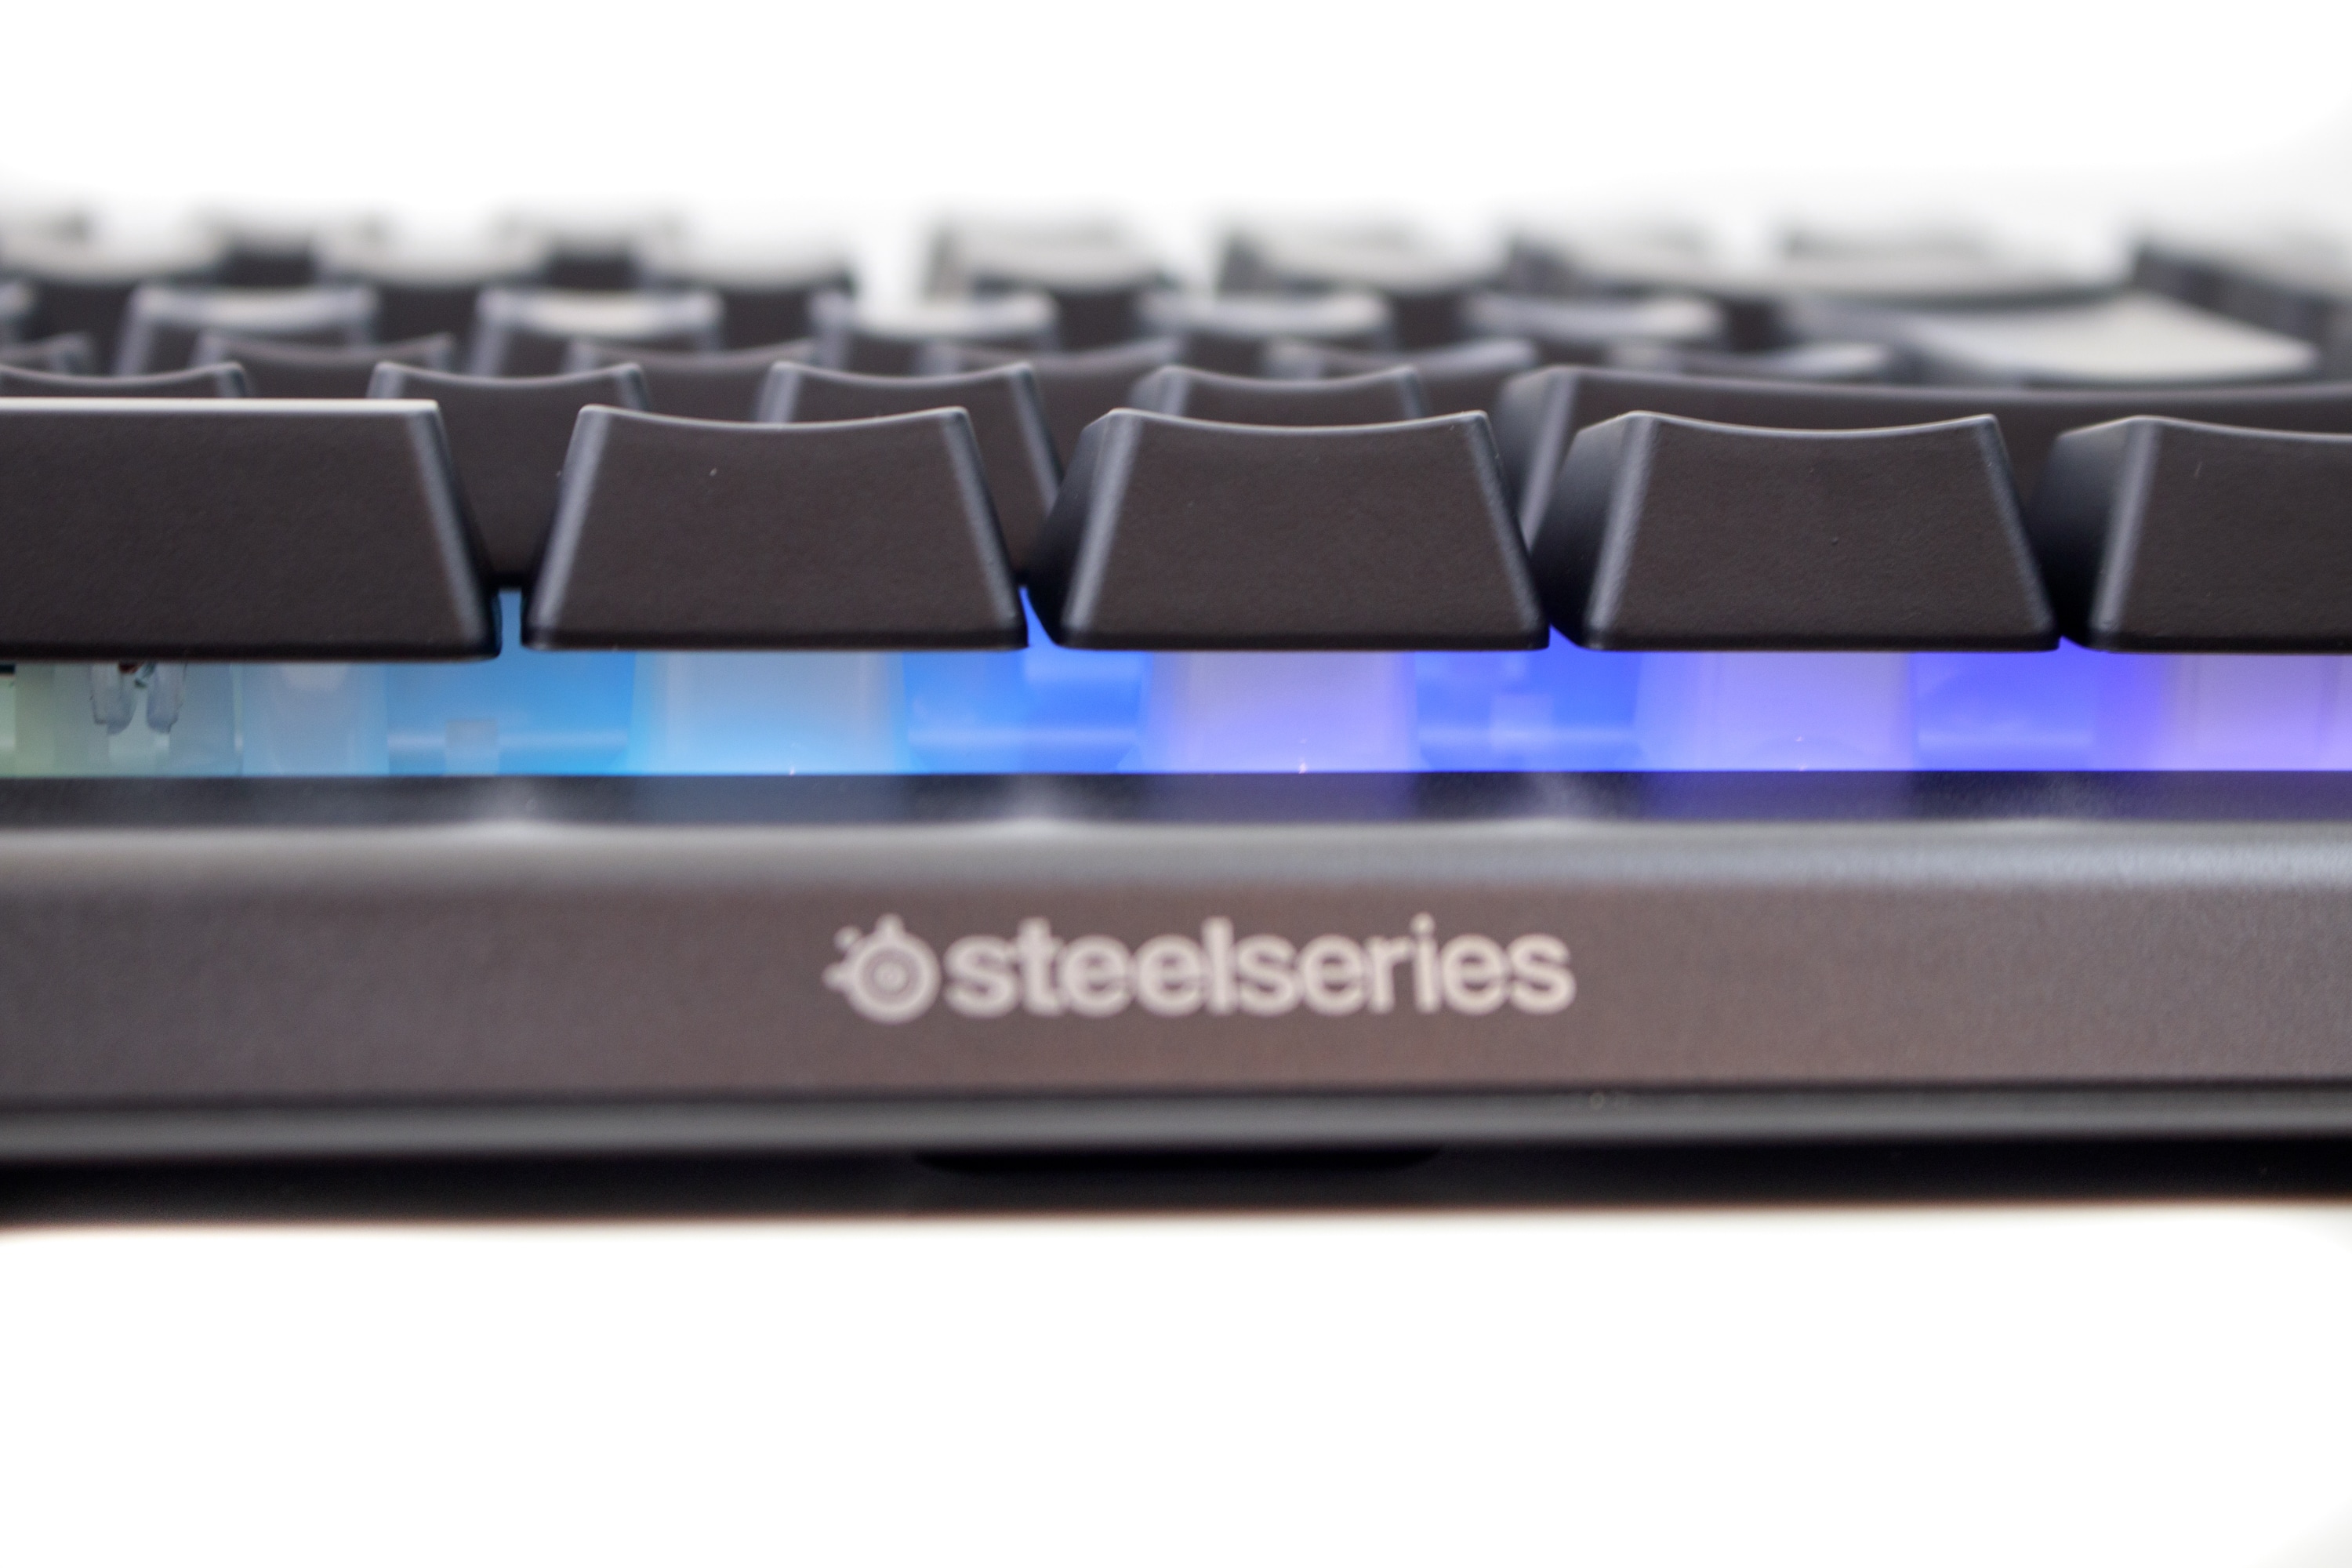 Steelseries Apex 3 Water Resistant Gaming Keyboard Under Test